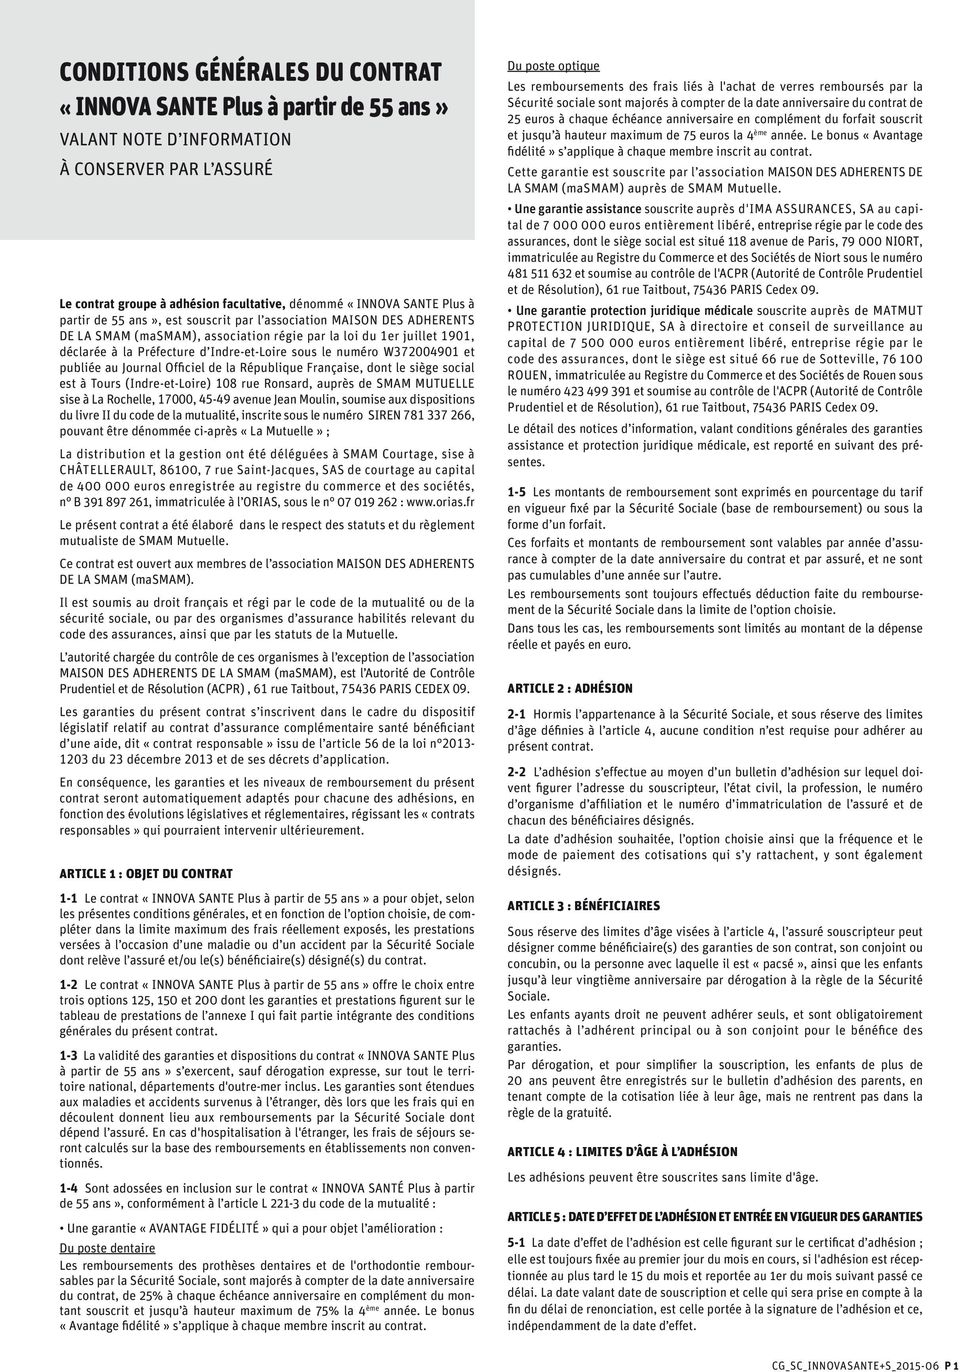 W372004901 et publiée au Journal Officiel de la République Française, dont le siège social est à Tours (Indre-et-Loire) 108 rue Ronsard, auprès de SMAM MUTUELLE sise à La Rochelle, 17000, 45-49